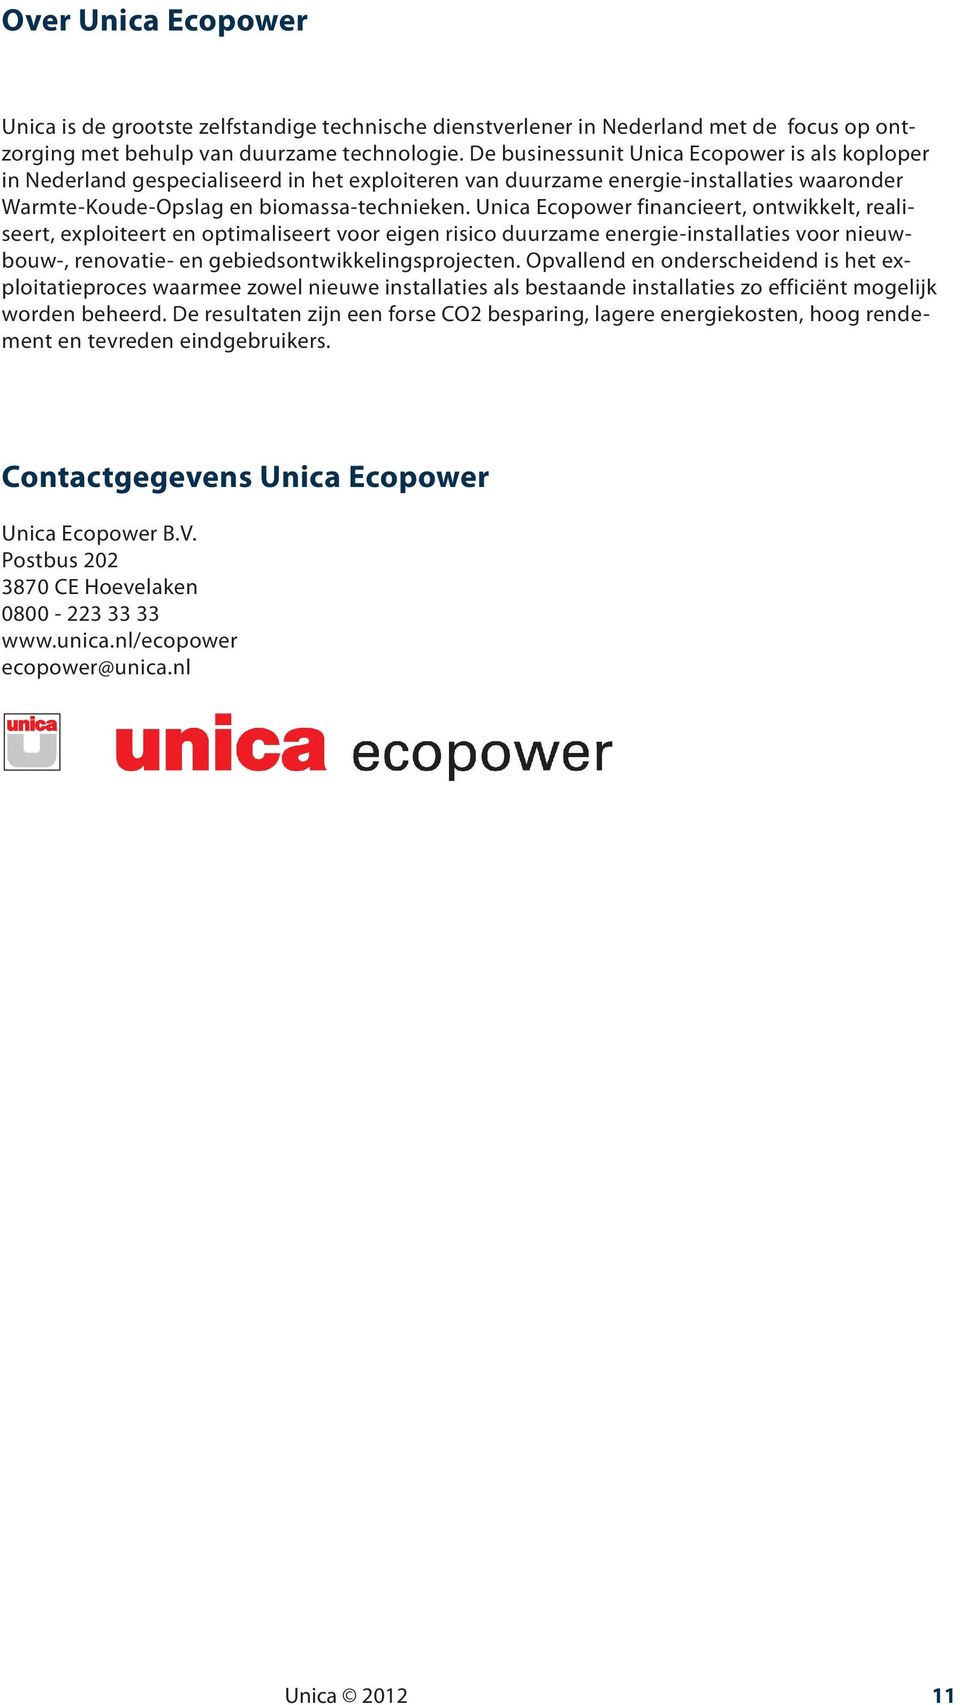 Unica Ecopower financieert, ontwikkelt, realiseert, exploiteert en optimaliseert voor eigen risico duurzame energie-installaties voor nieuwbouw-, renovatie- en gebiedsontwikkelingsprojecten.